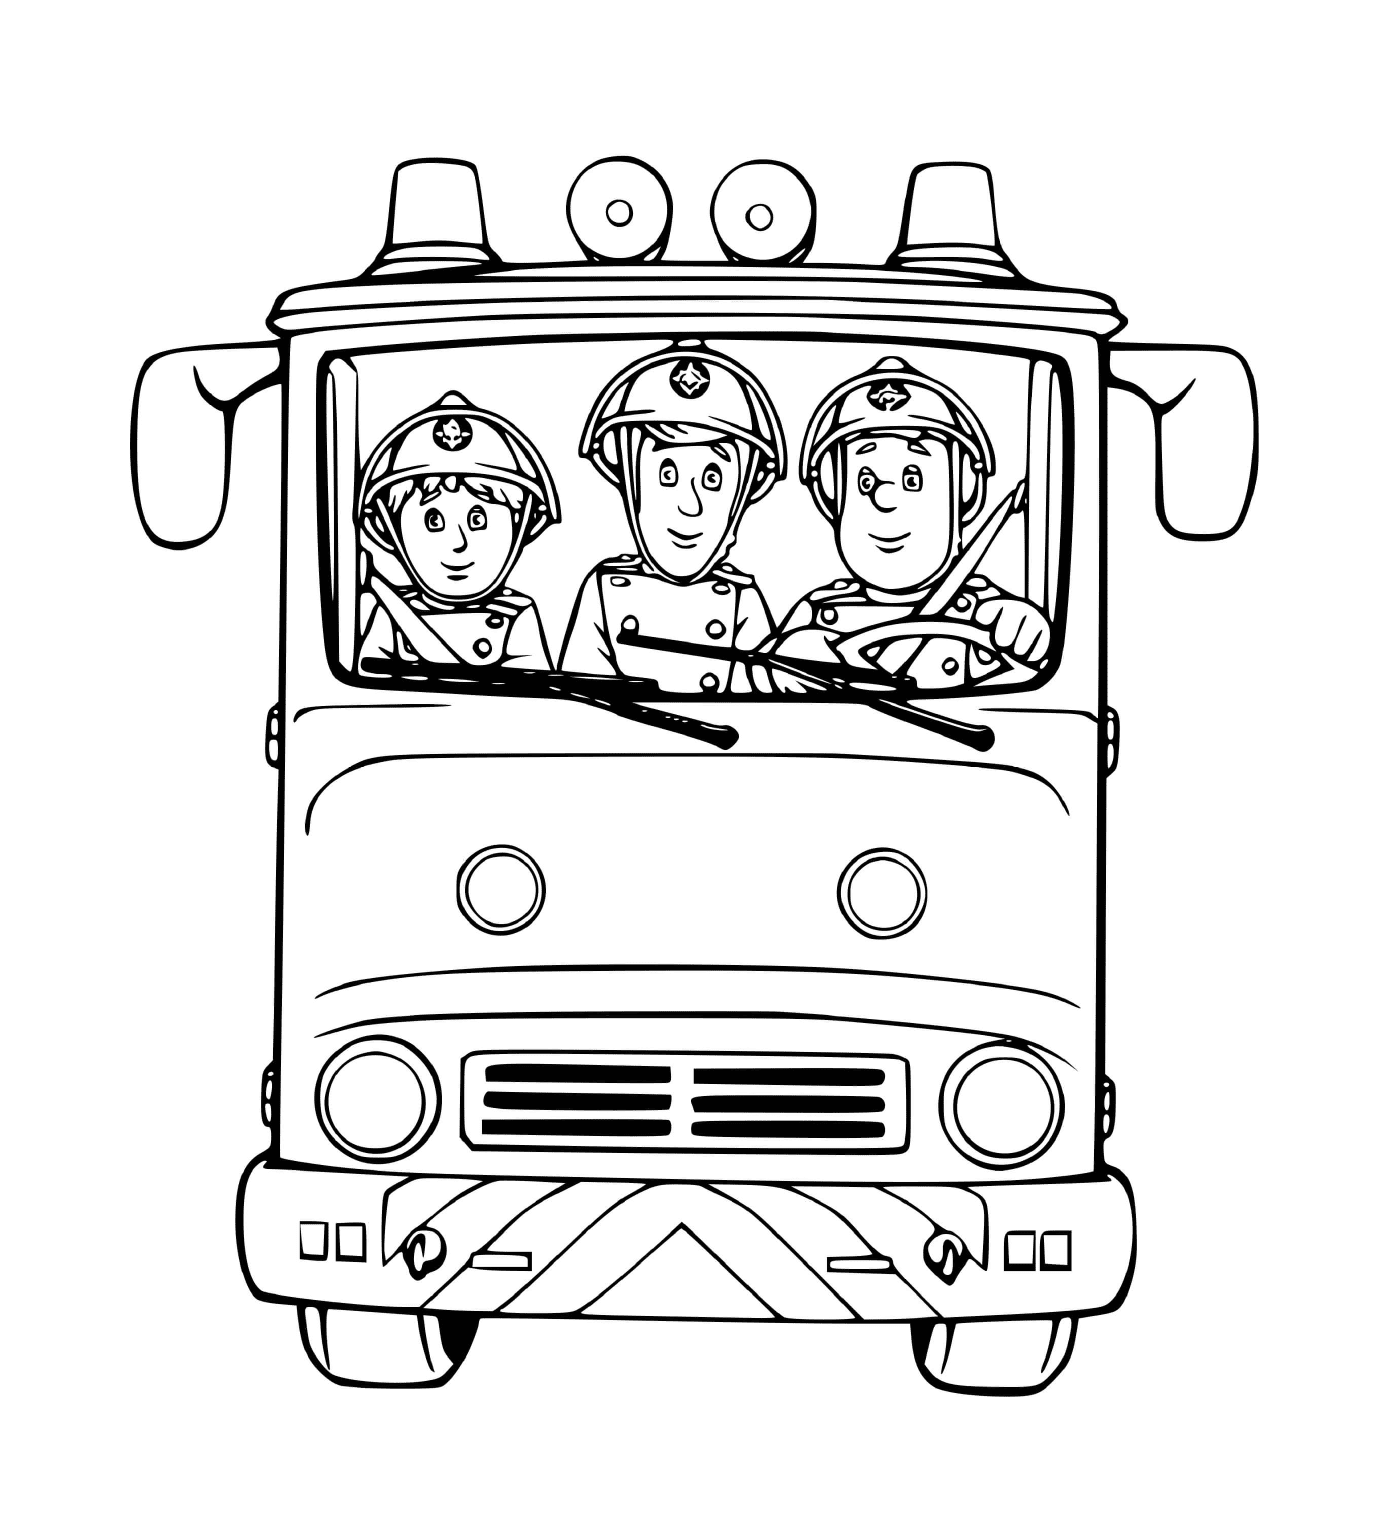  Tre pompieri in un camion pronto ad agire 